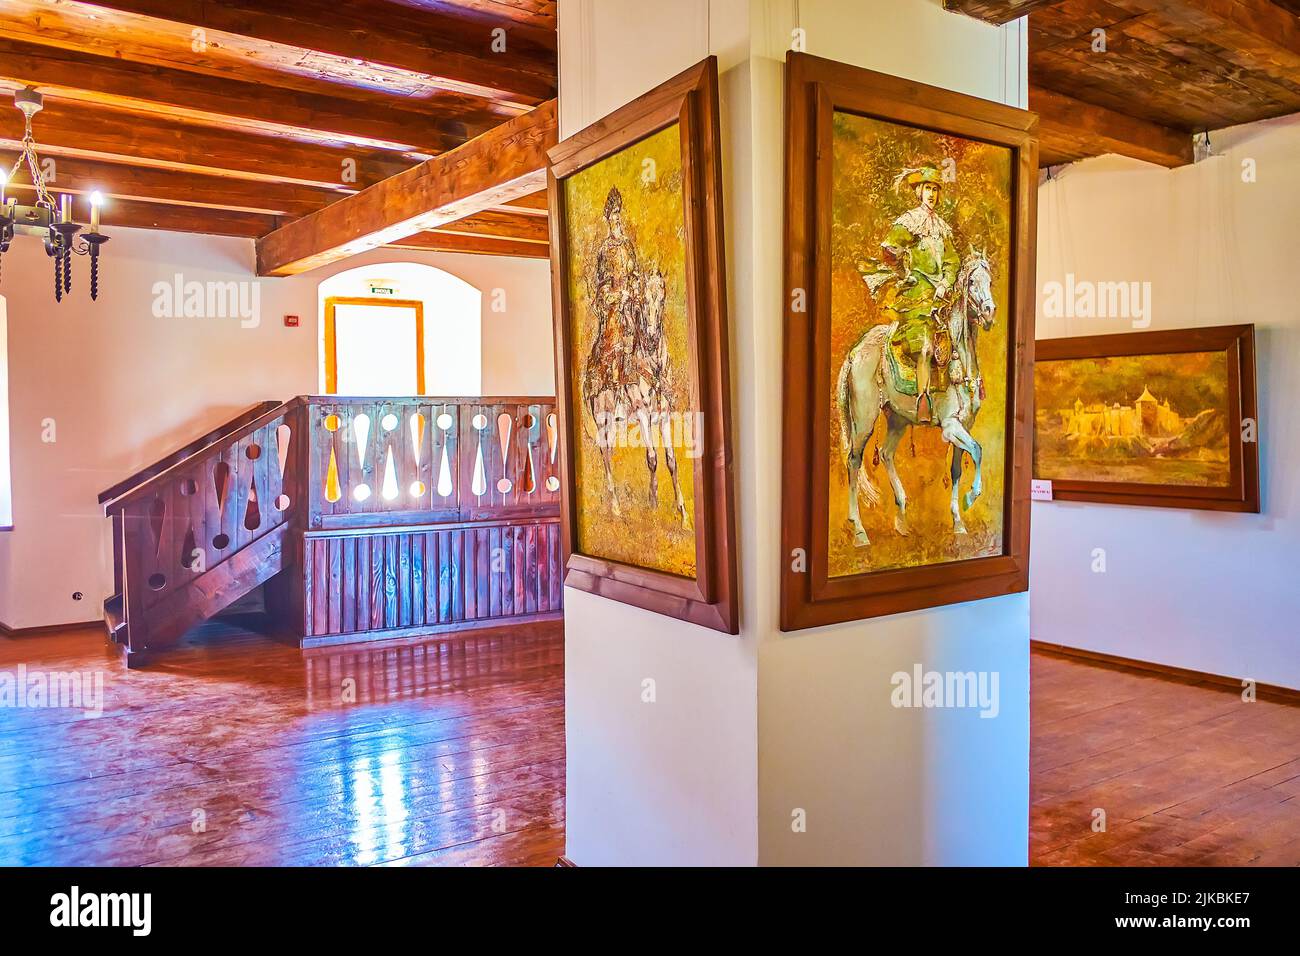 KHOTYN, UCRAINA - 15 LUGLIO 2021: I vecchi dipinti sulle pareti e le colonne nella sala storica della Fortezza di Khotyn, il 15 giugno a Khotyn, Ucraina Foto Stock